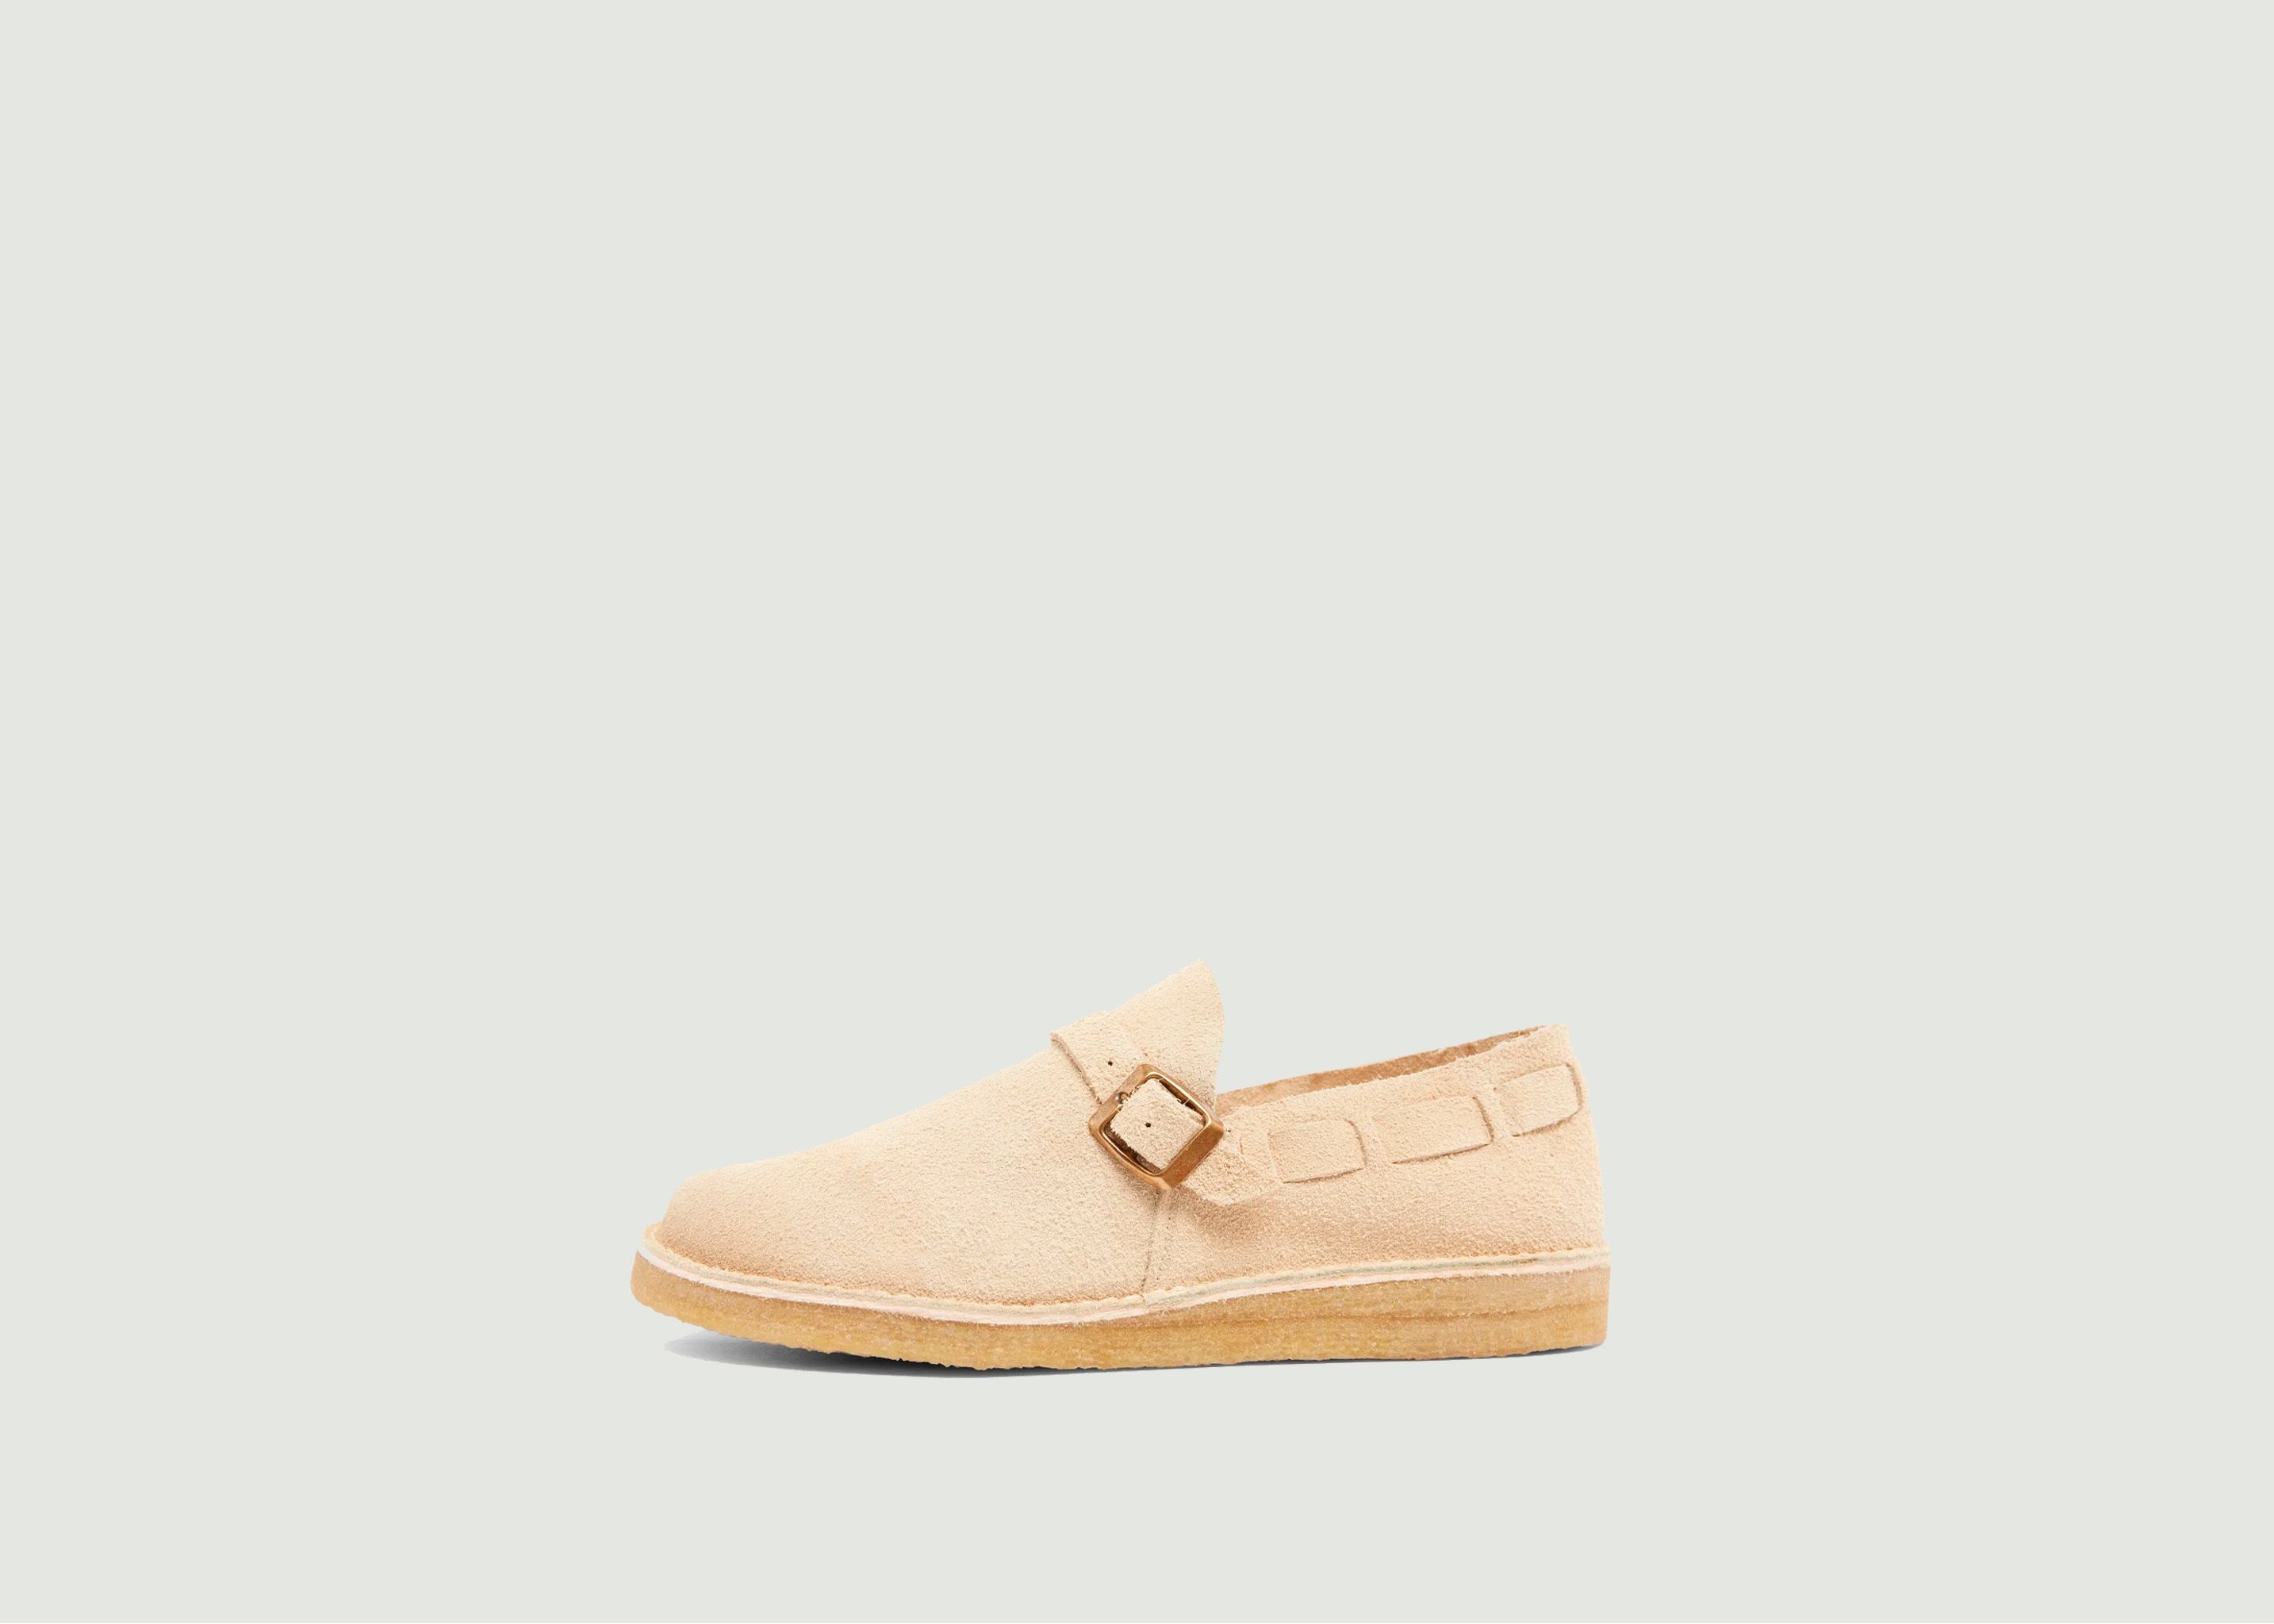 Schuhe Corso Suede - Yogi Footwear